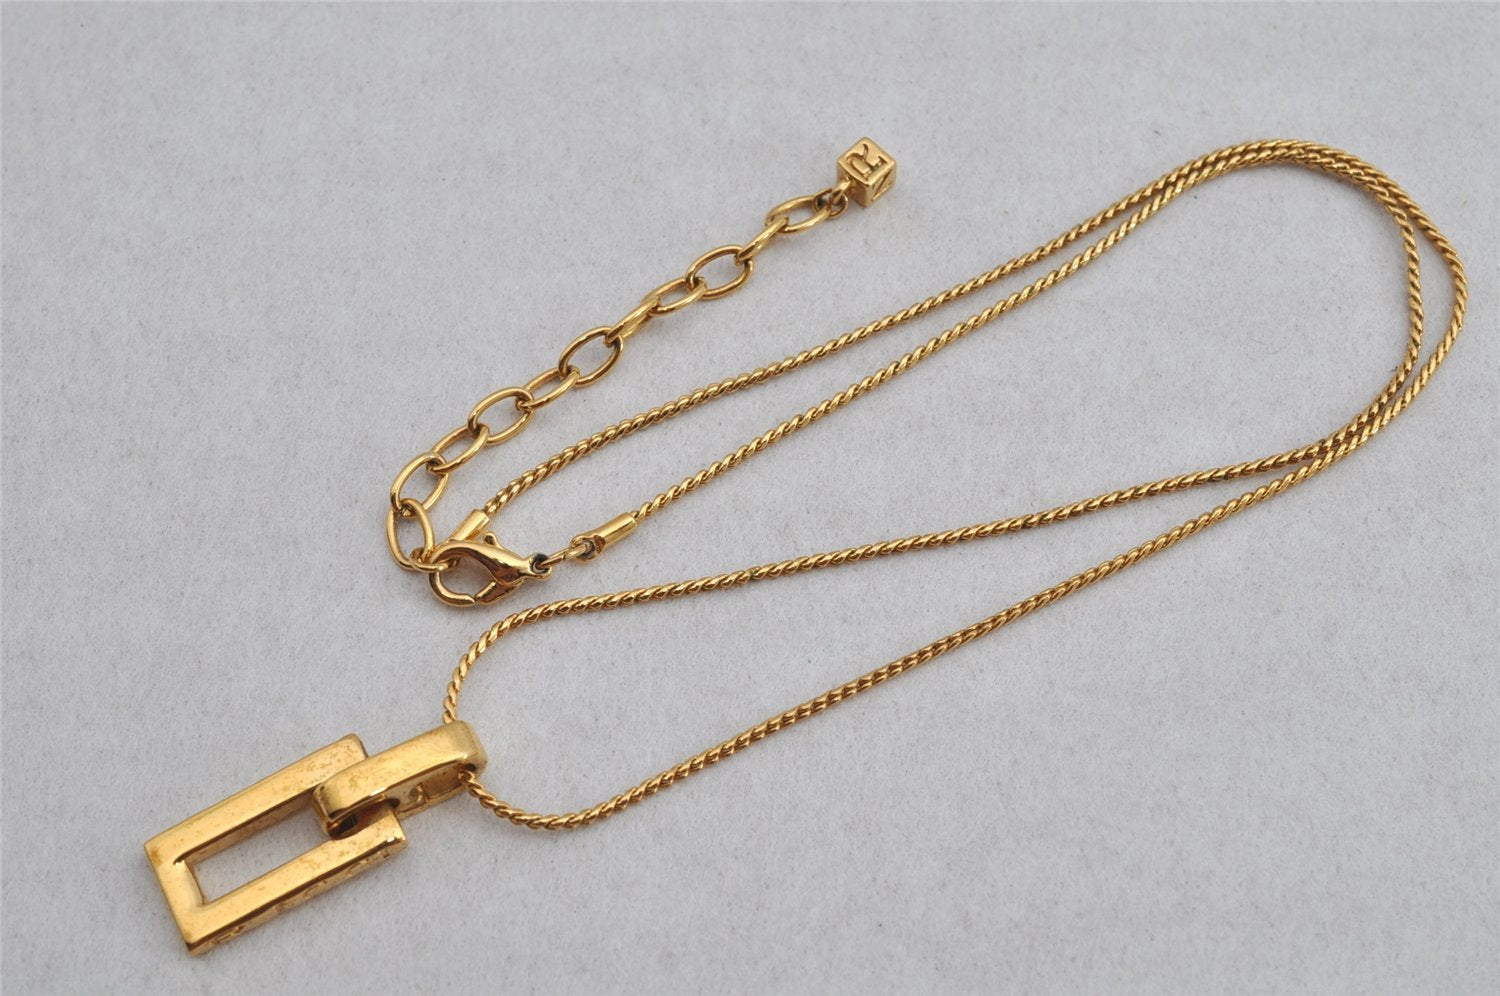 Authentic NINA RICCI Vintage Gold Tone Chain Pendant Necklace 8591J